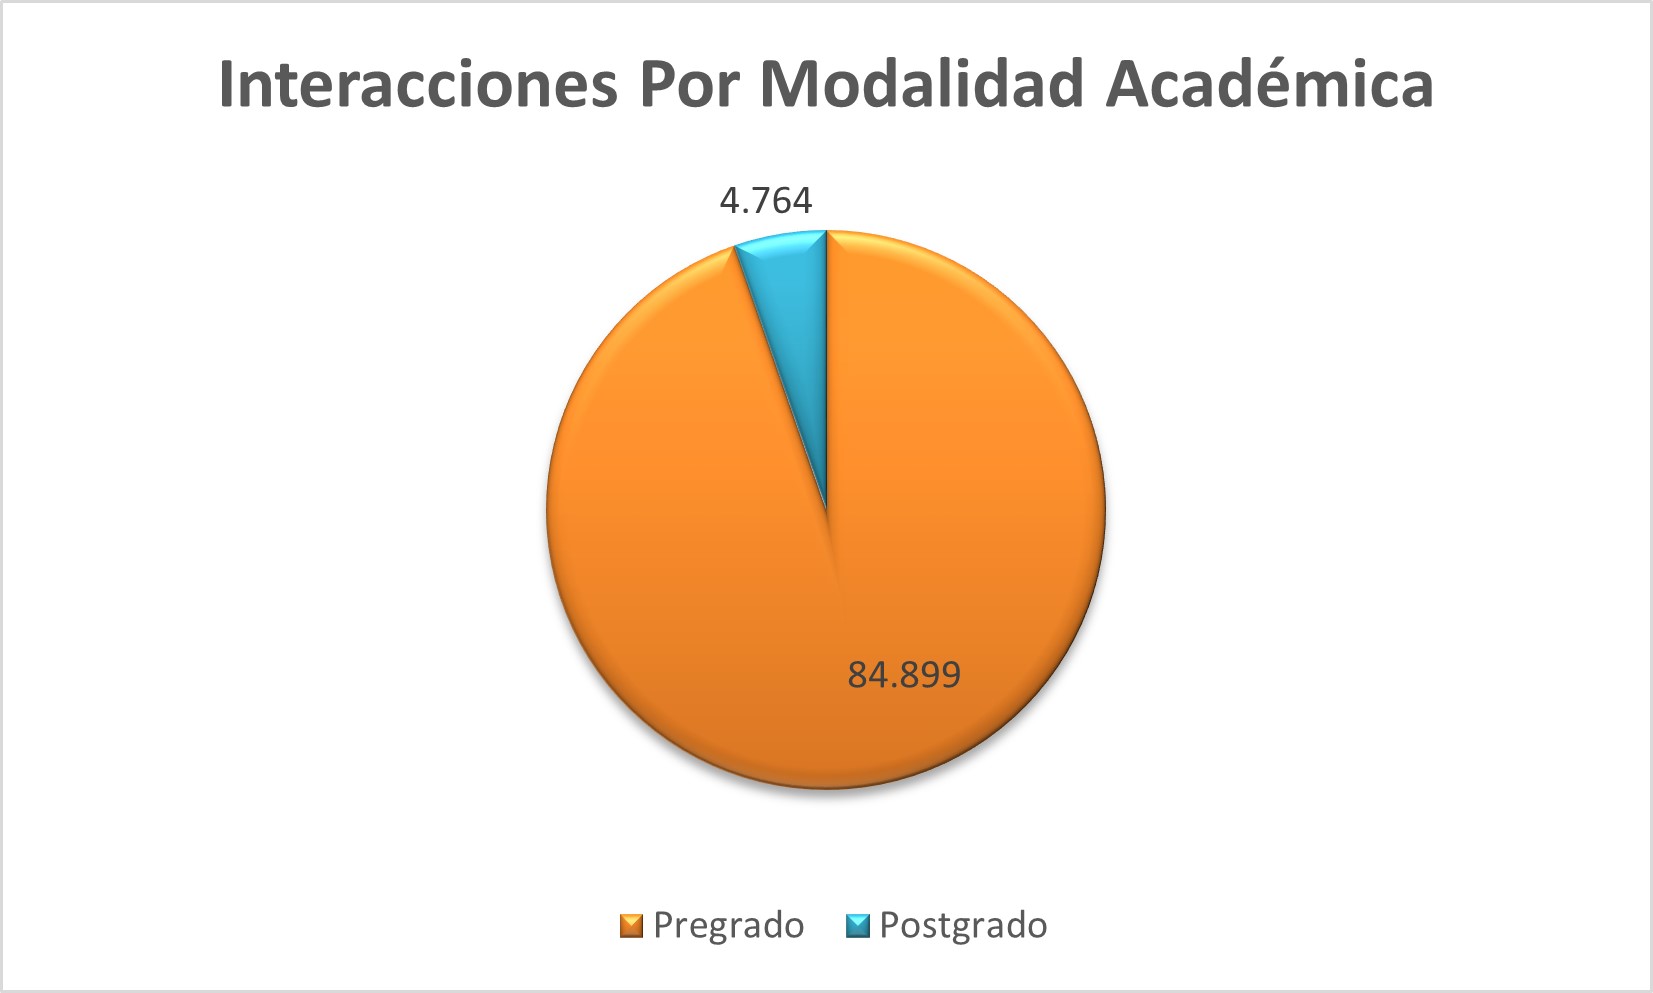 Interacciones_Por_Modalidad_Academica